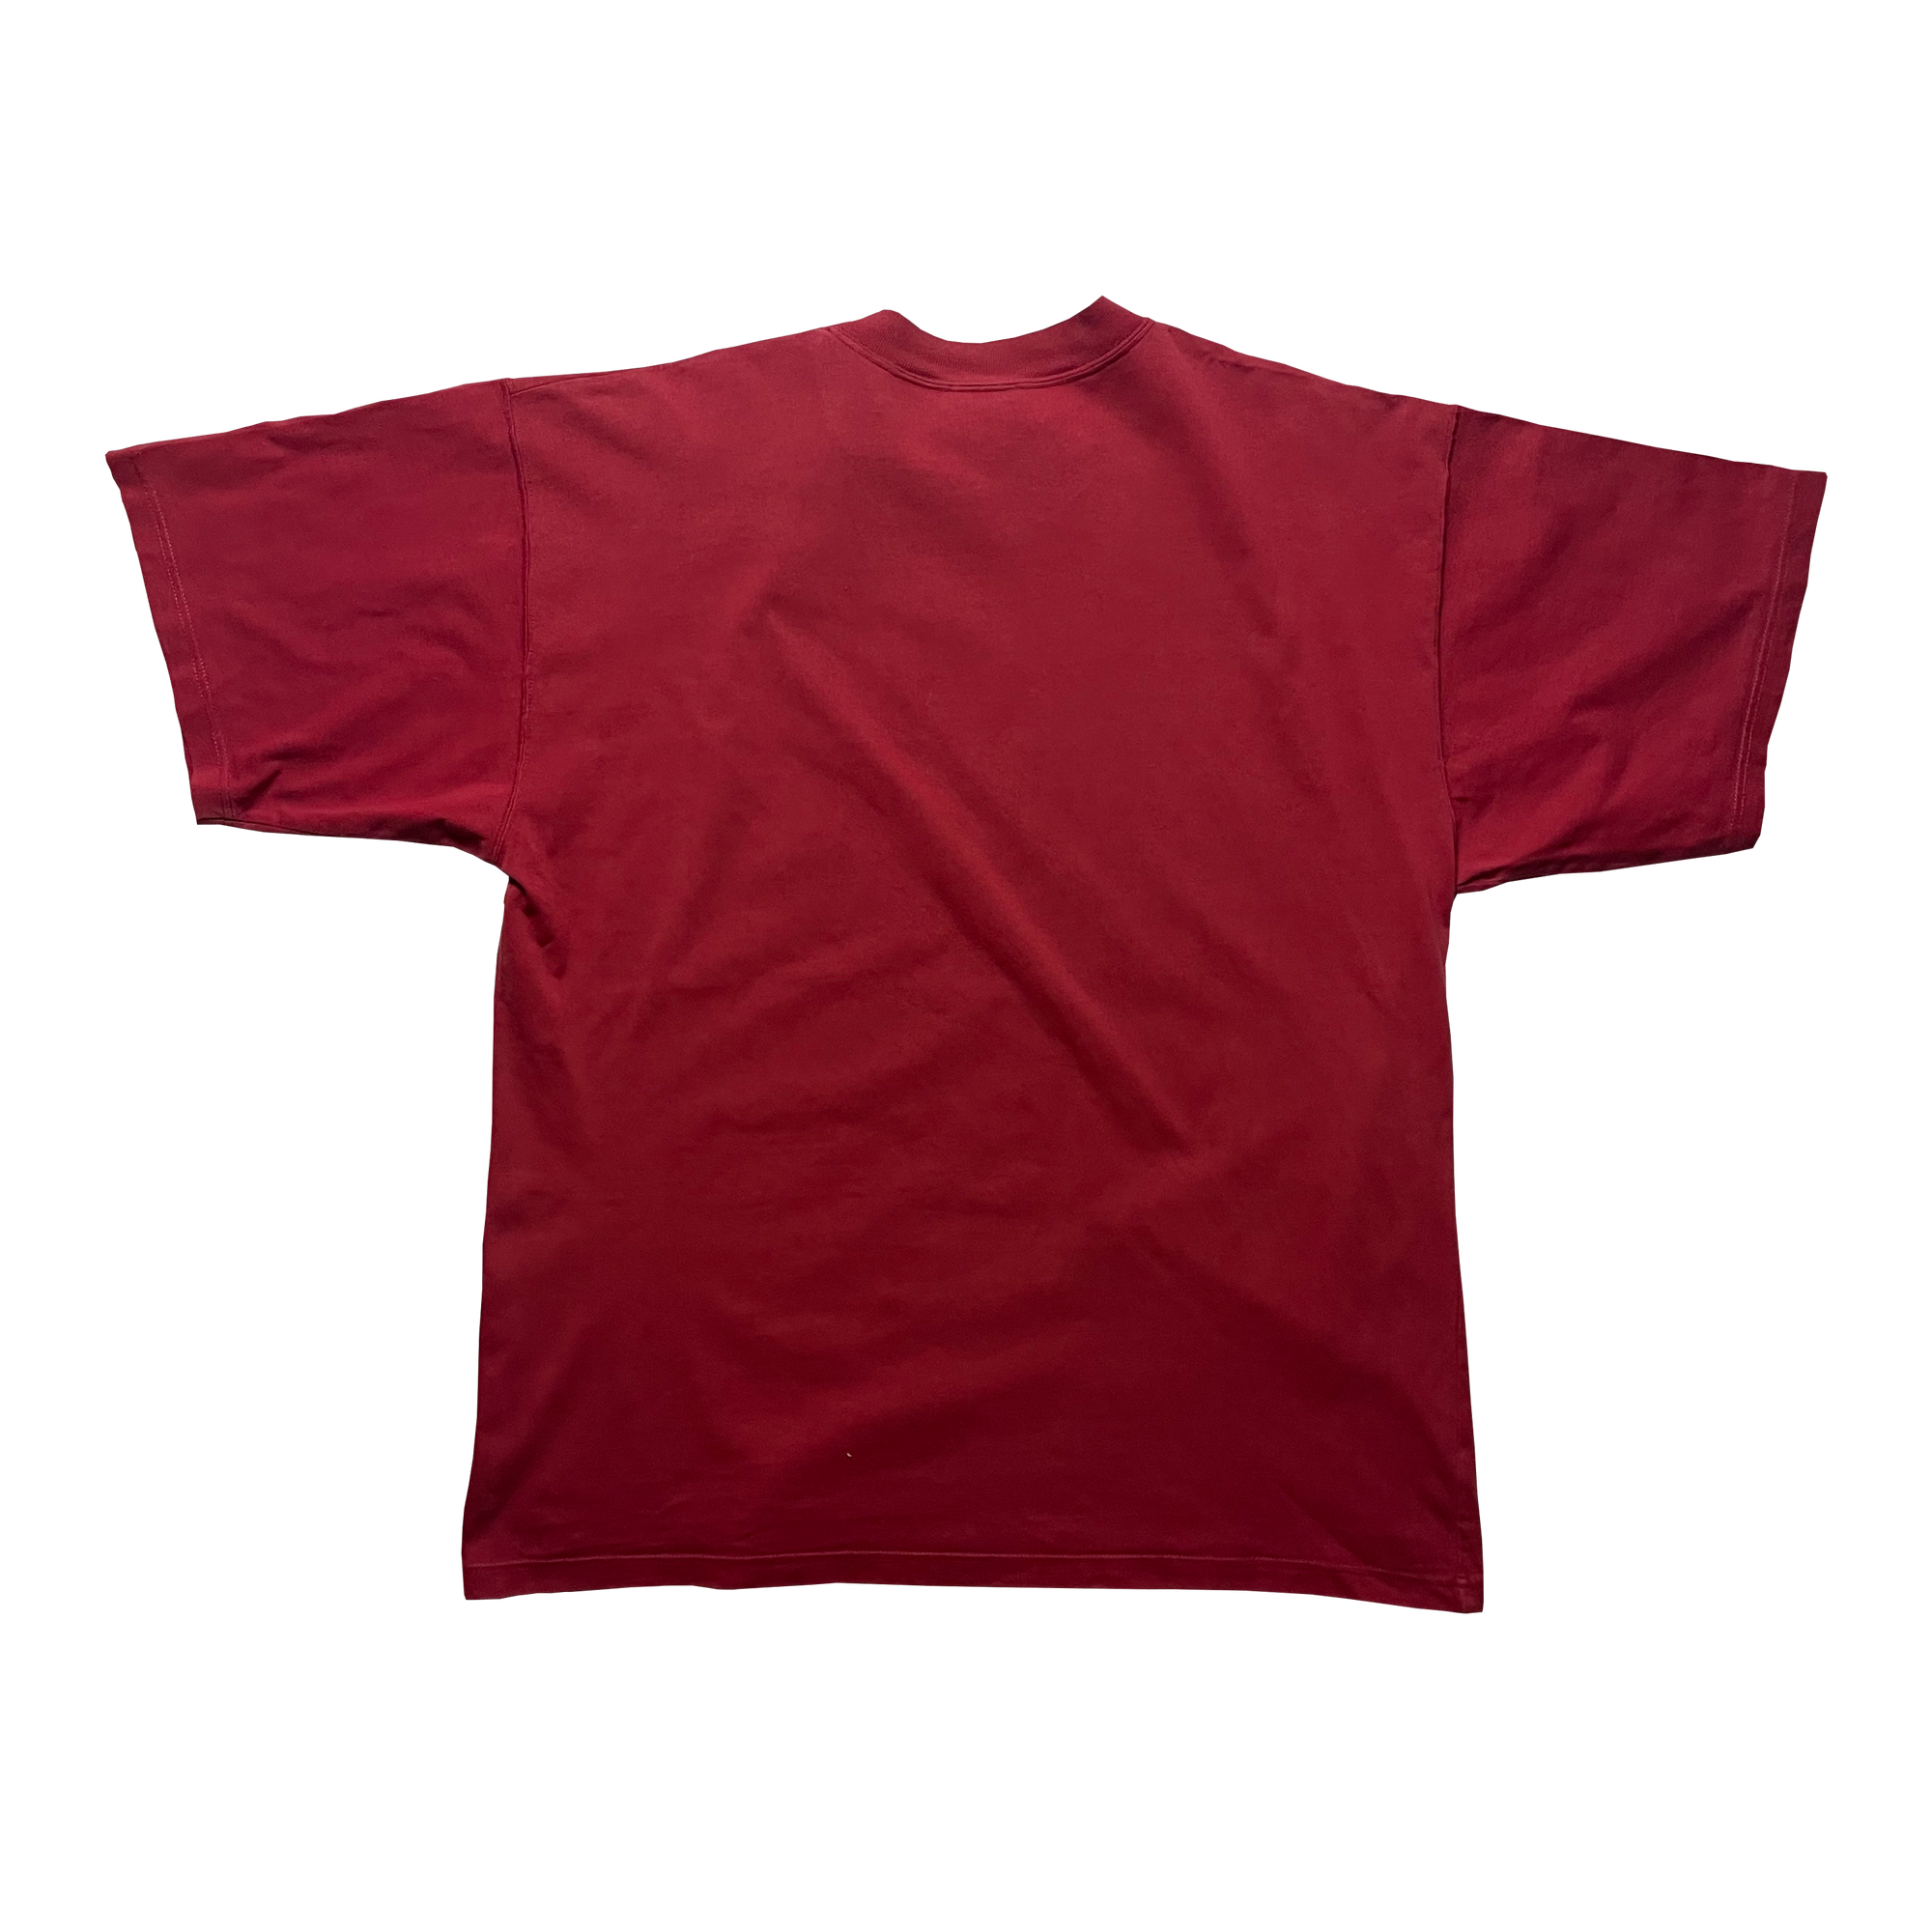 T-shirt - Nike Cross Training X - Rouge